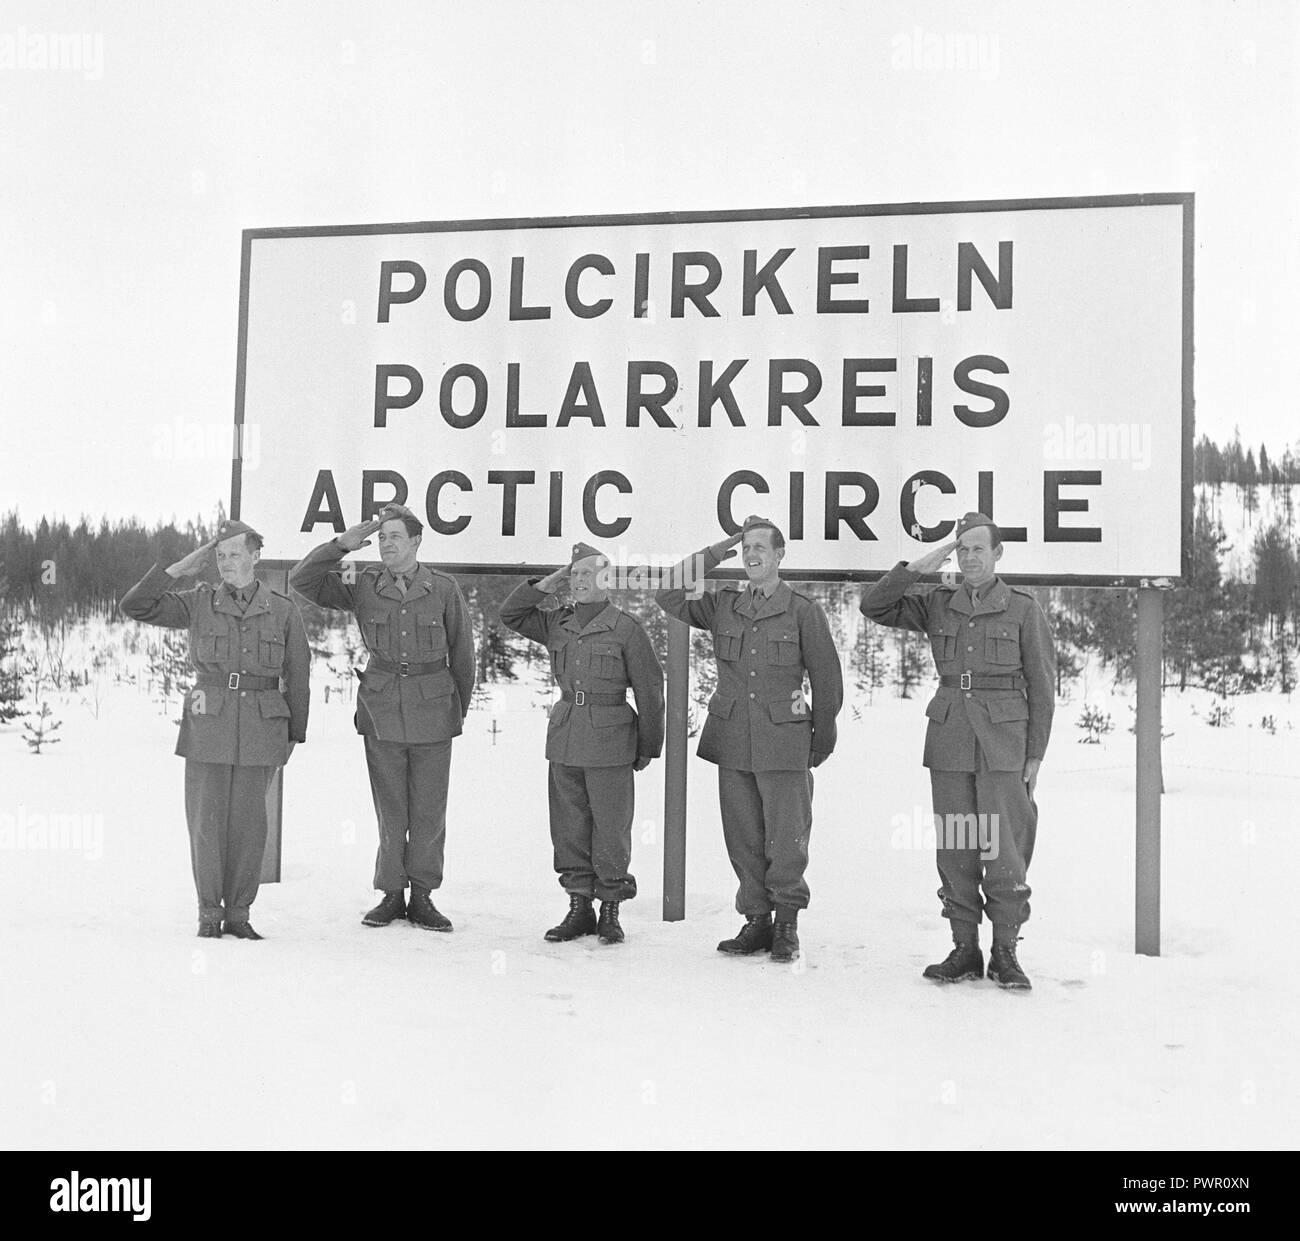 Cercle arctique dans les années 40. Cinq soldats suédois sont debout dans l'attention saluant sous un grand panneau dans le cercle Arctique 1944. Kristoffersson Photo ref H75-6 Banque D'Images